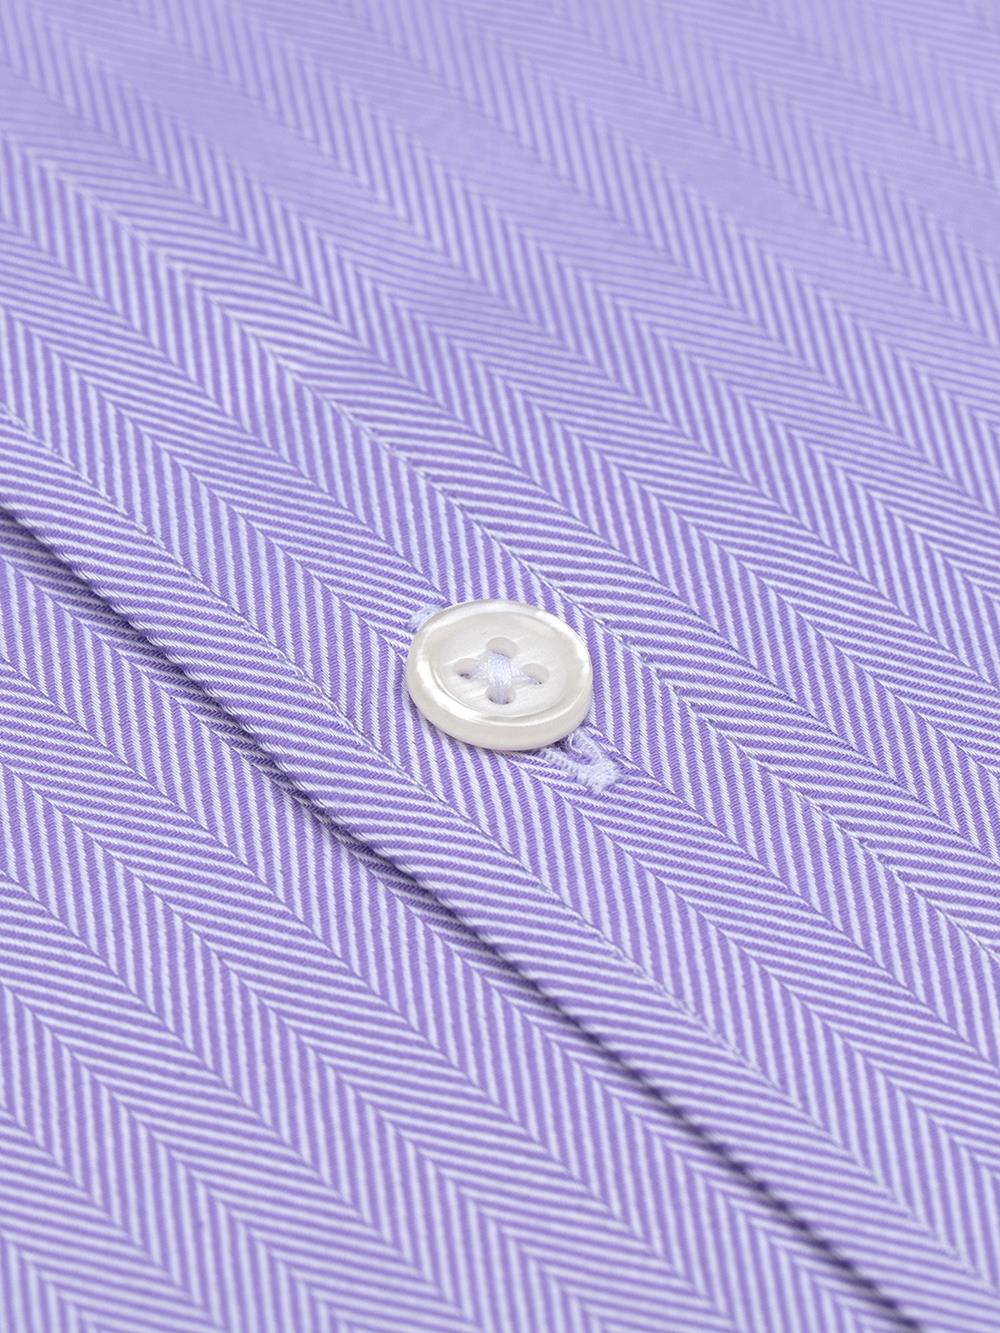 Slim-fitted parma visgraat overhemd